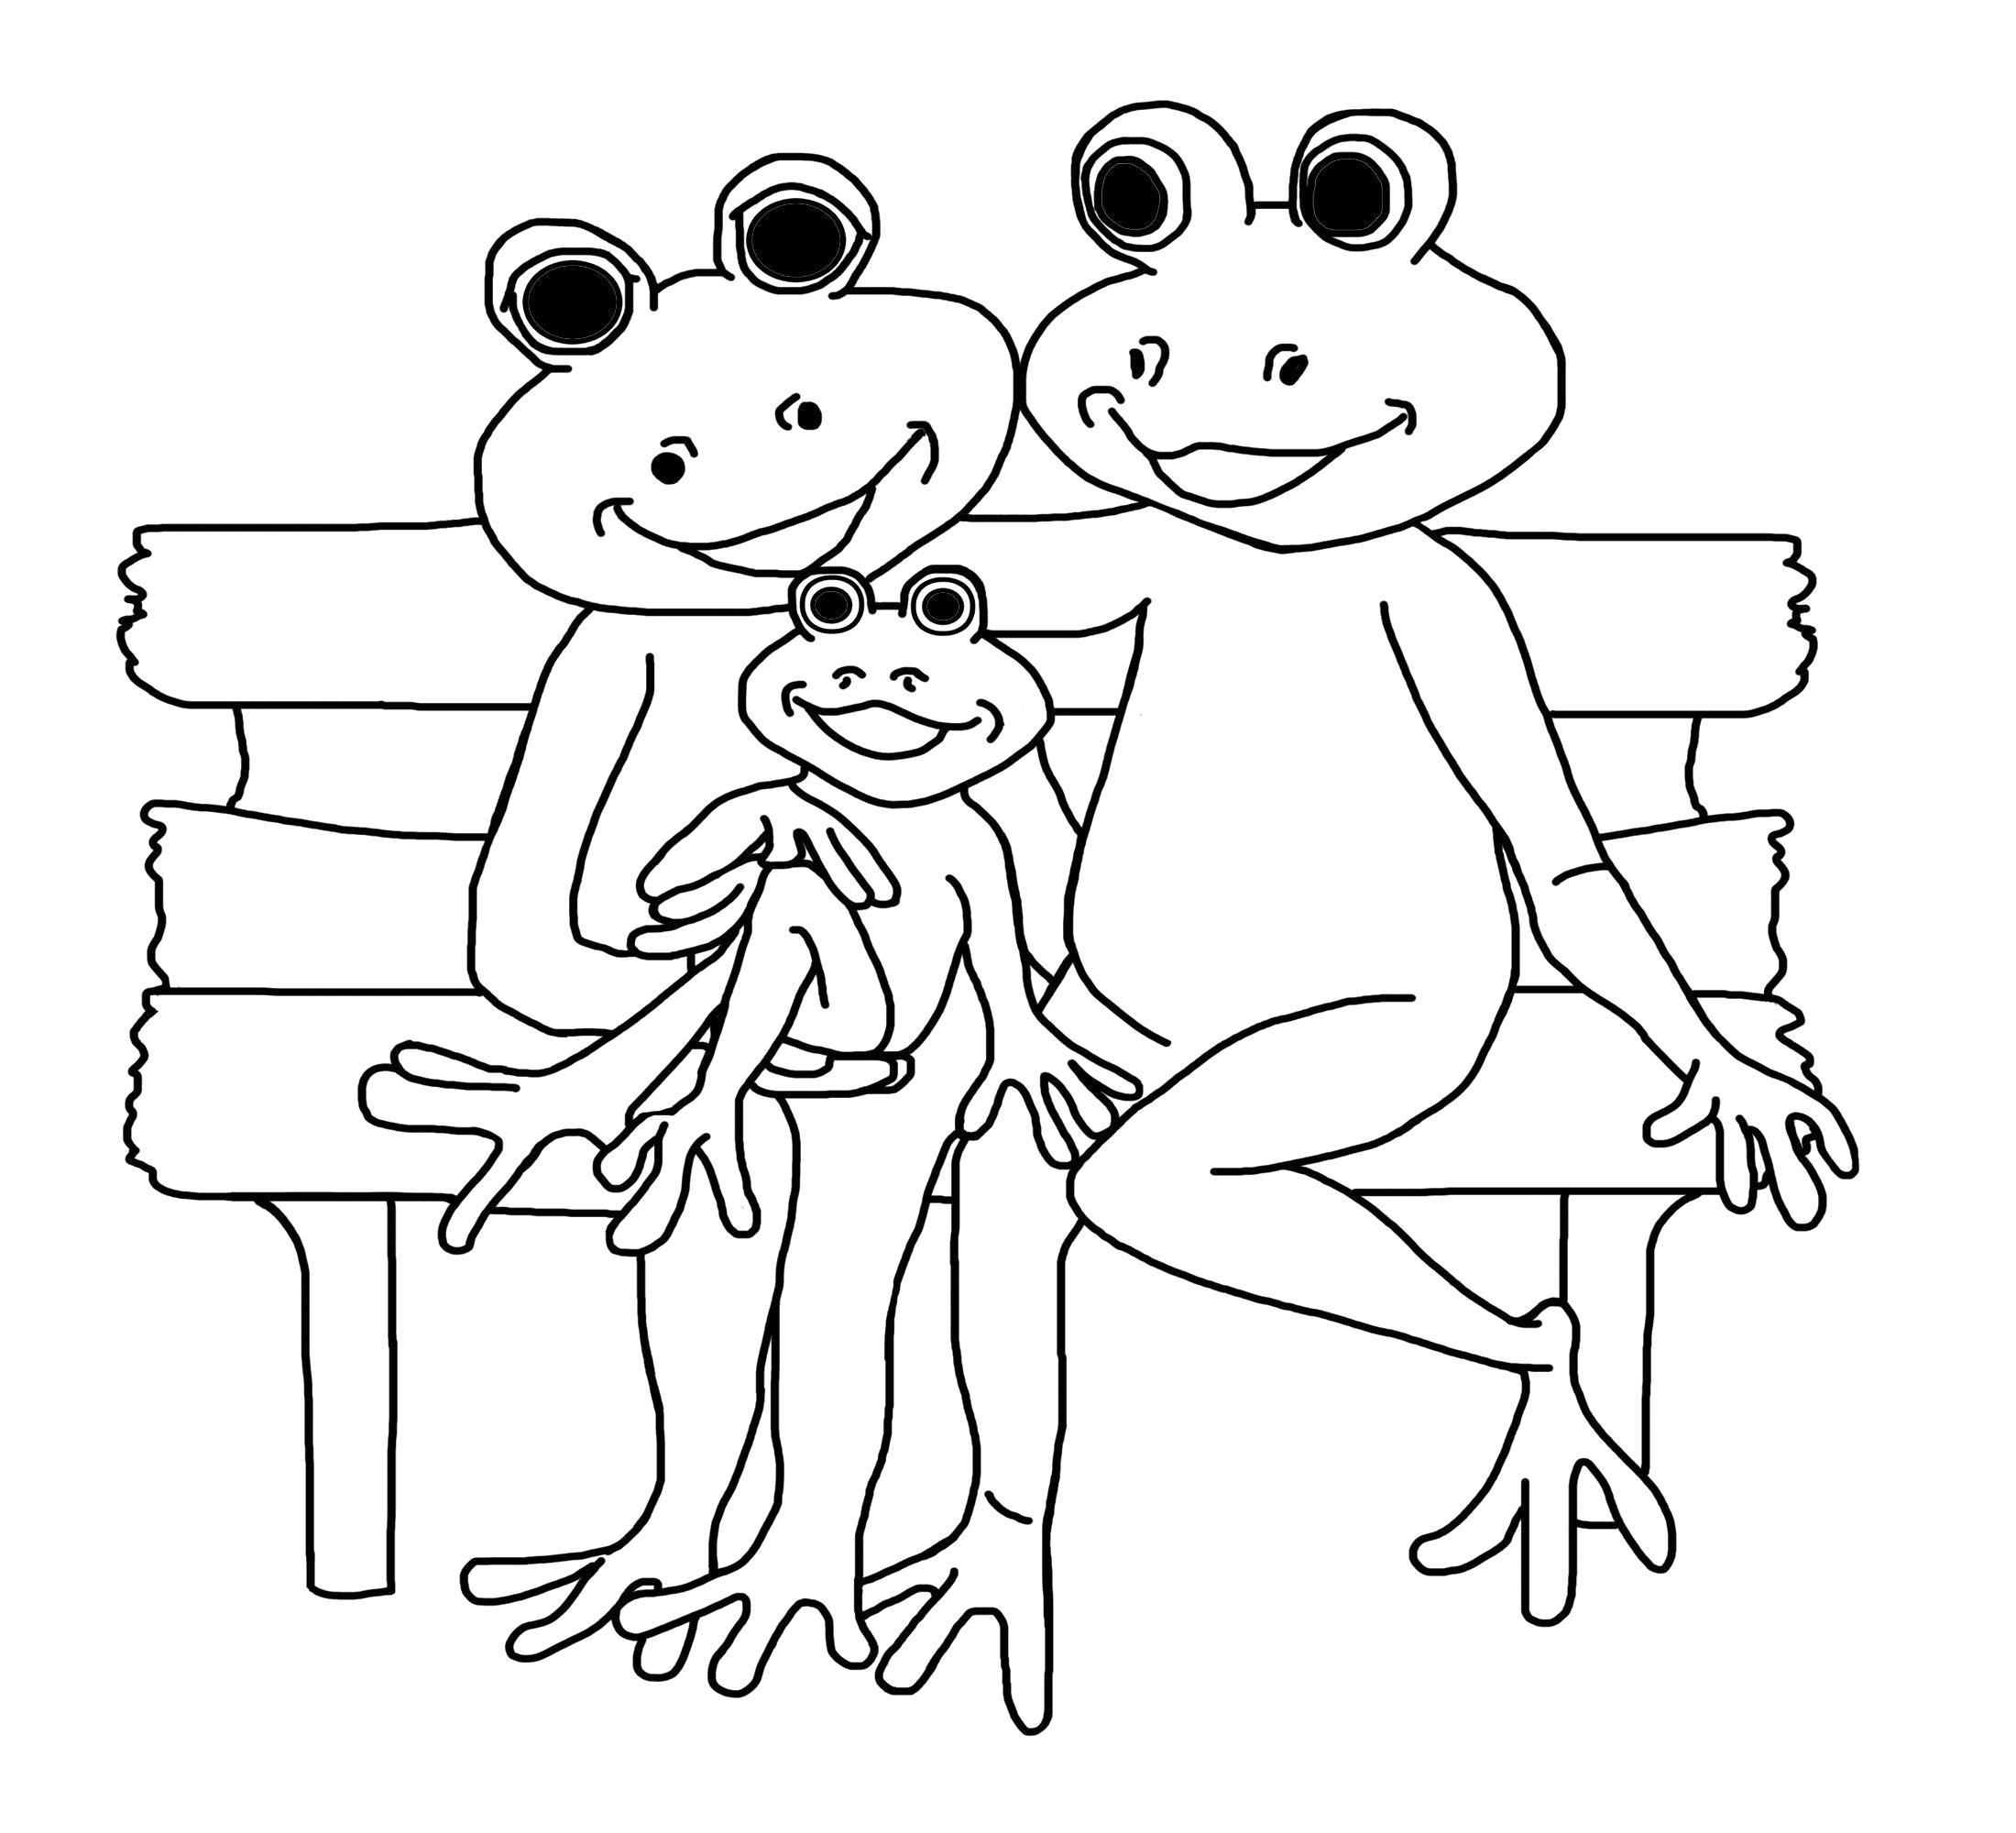 Раскраска картинка лягушка раскраска для детей. лягушка